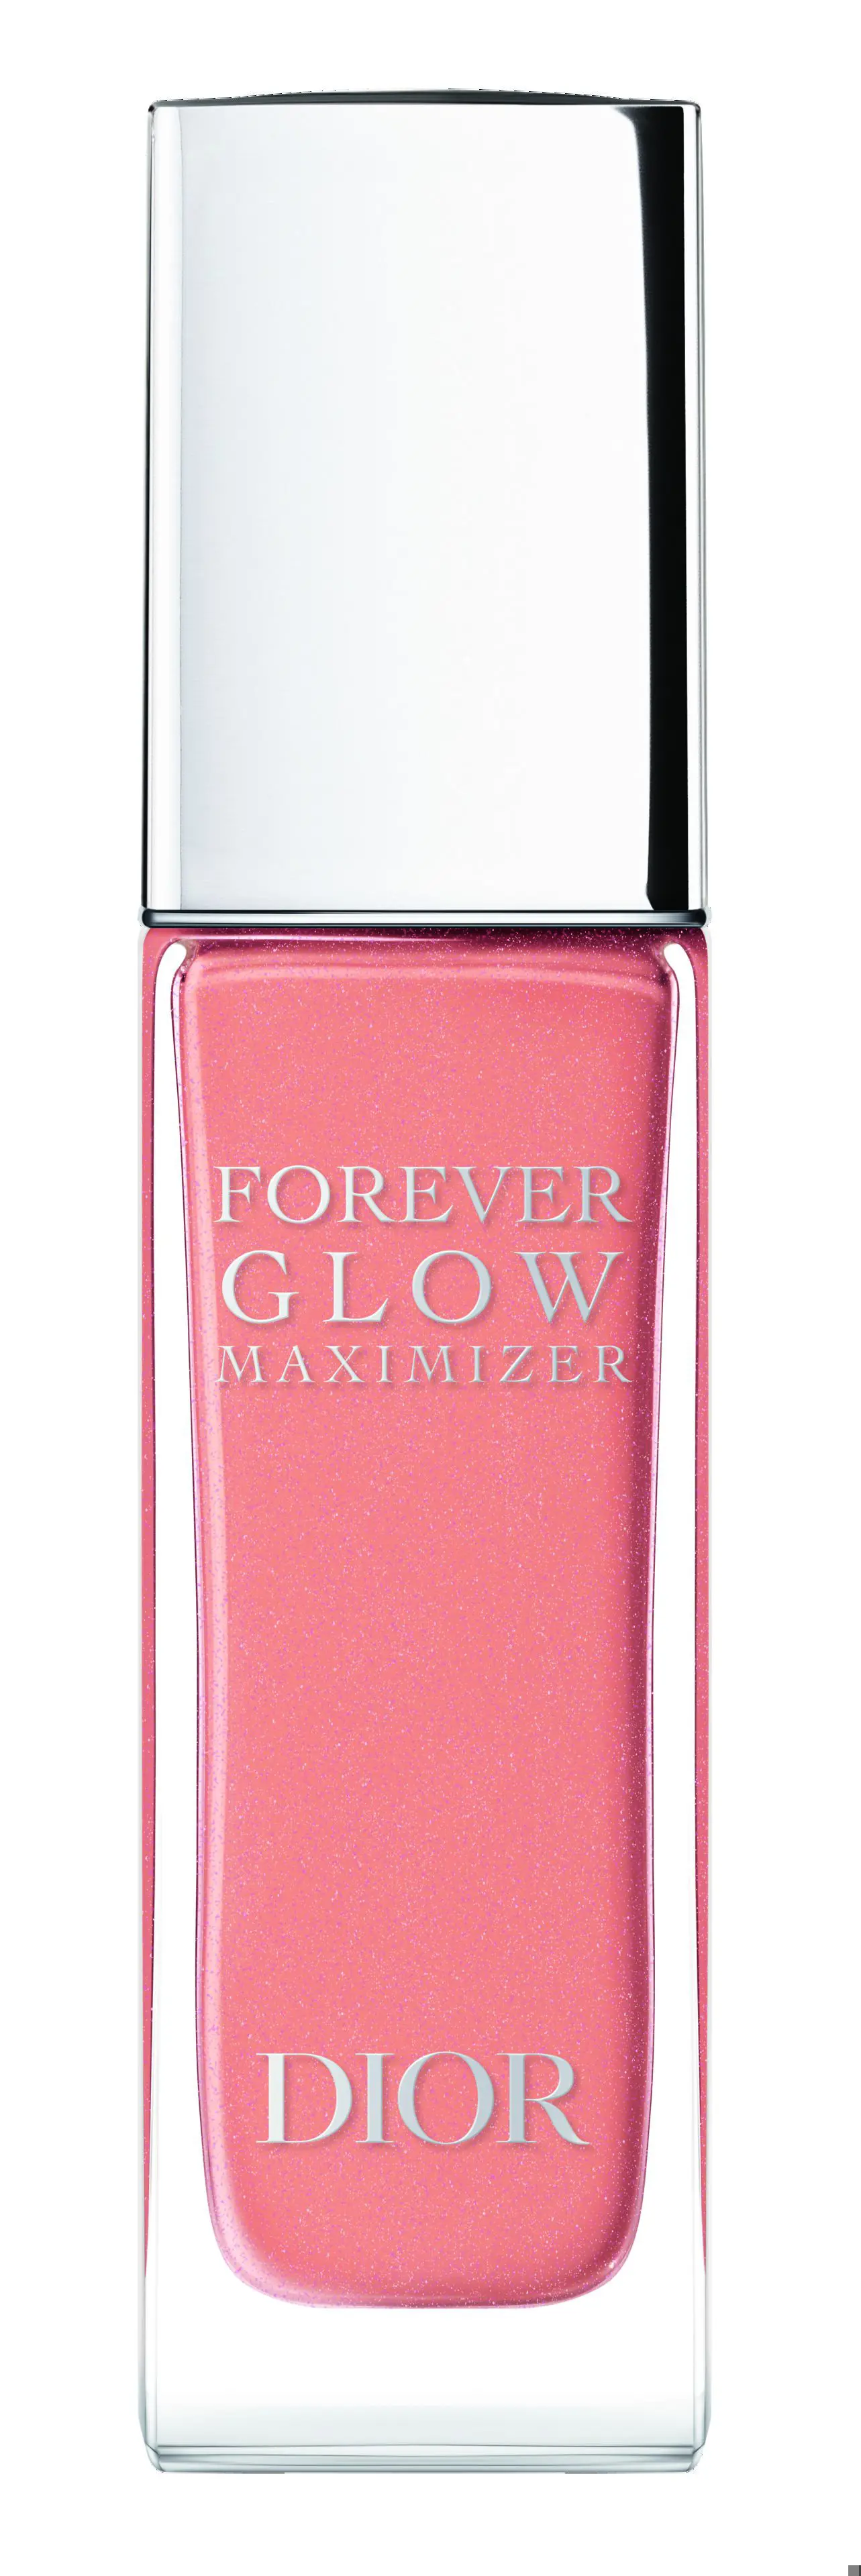 Forever Glow Maximizer de Dior (41 €).